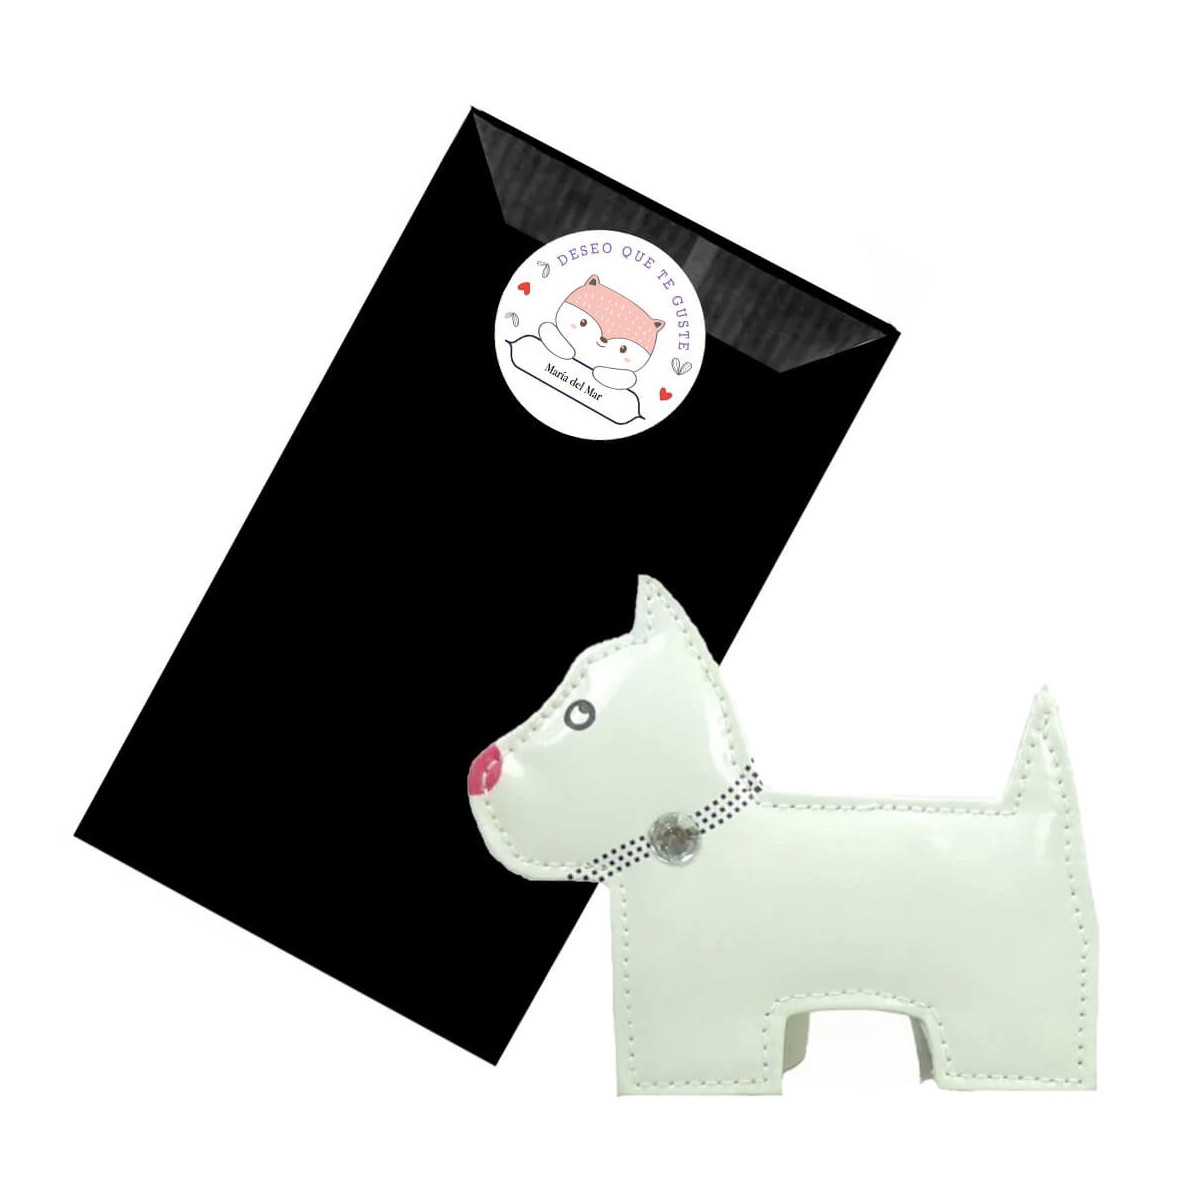 Kit de manucure pour chien dans une enveloppe kraft noire personnalisée avec un adhésif avec le nom i wish you like it